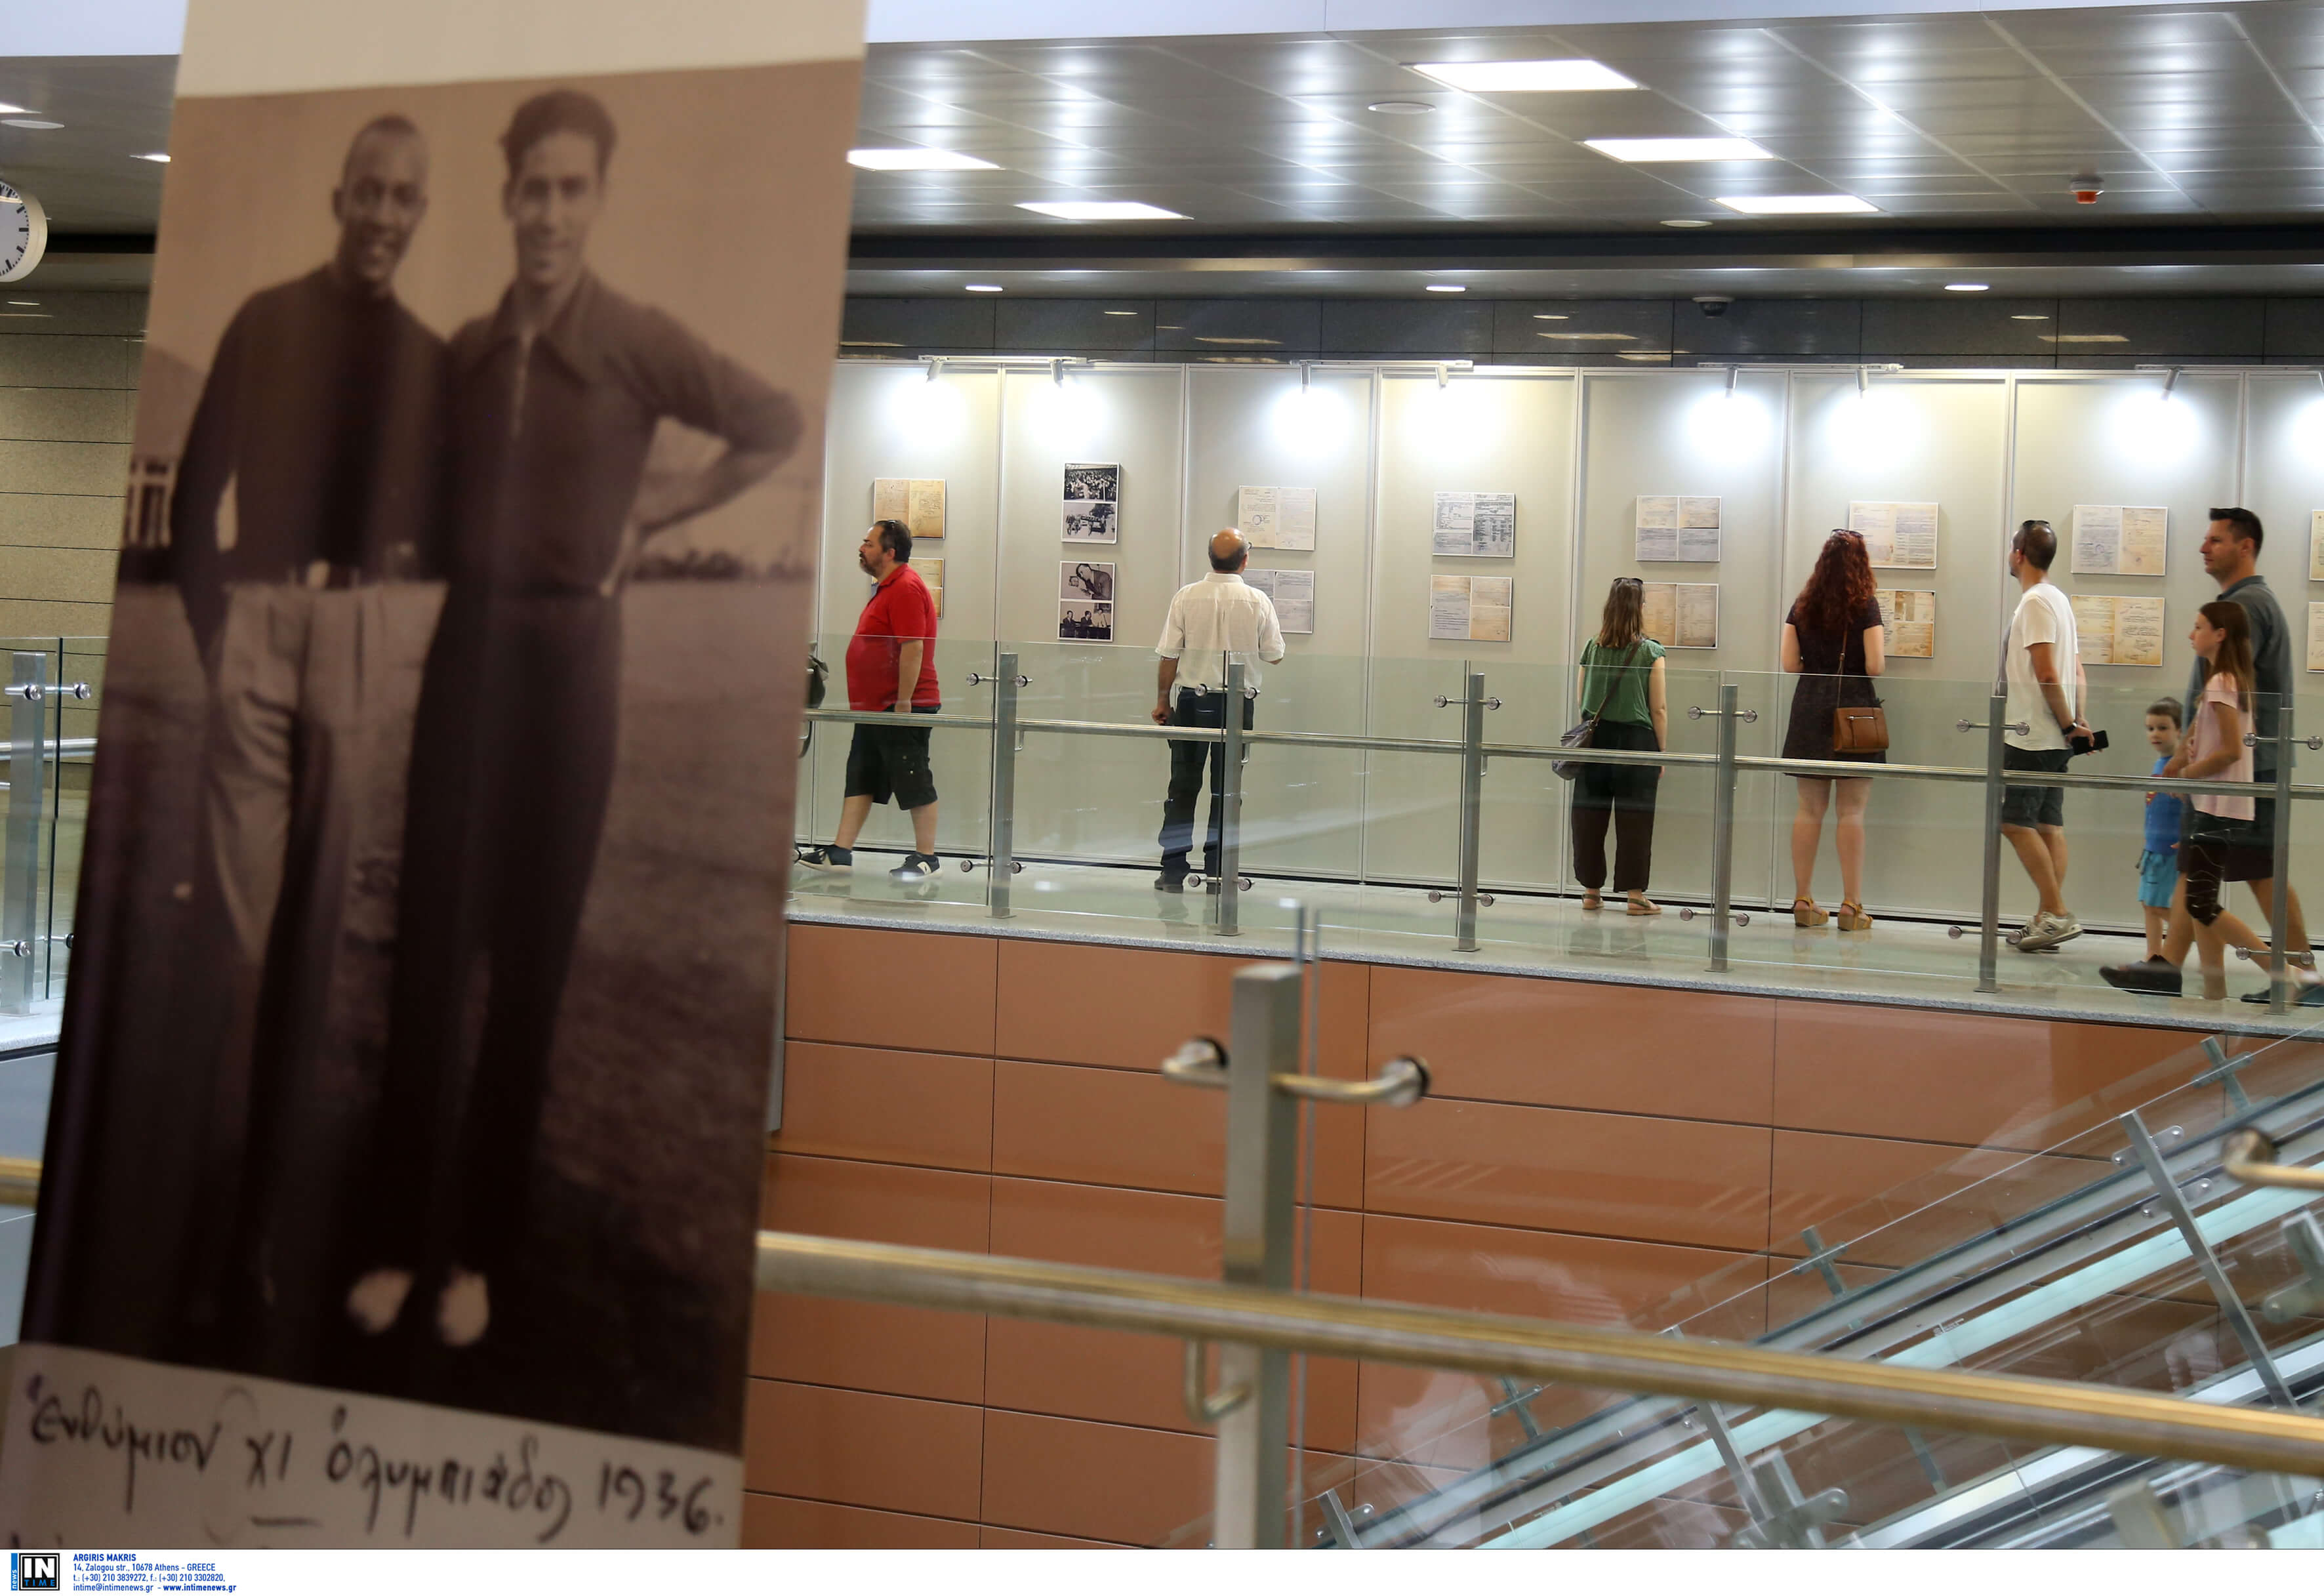 Θεσσαλονίκη: Έκθεση φωτογραφίας για τον Γρηγόρη Λαμπράκη στον σταθμό “Ευκλείδης” του μετρό!